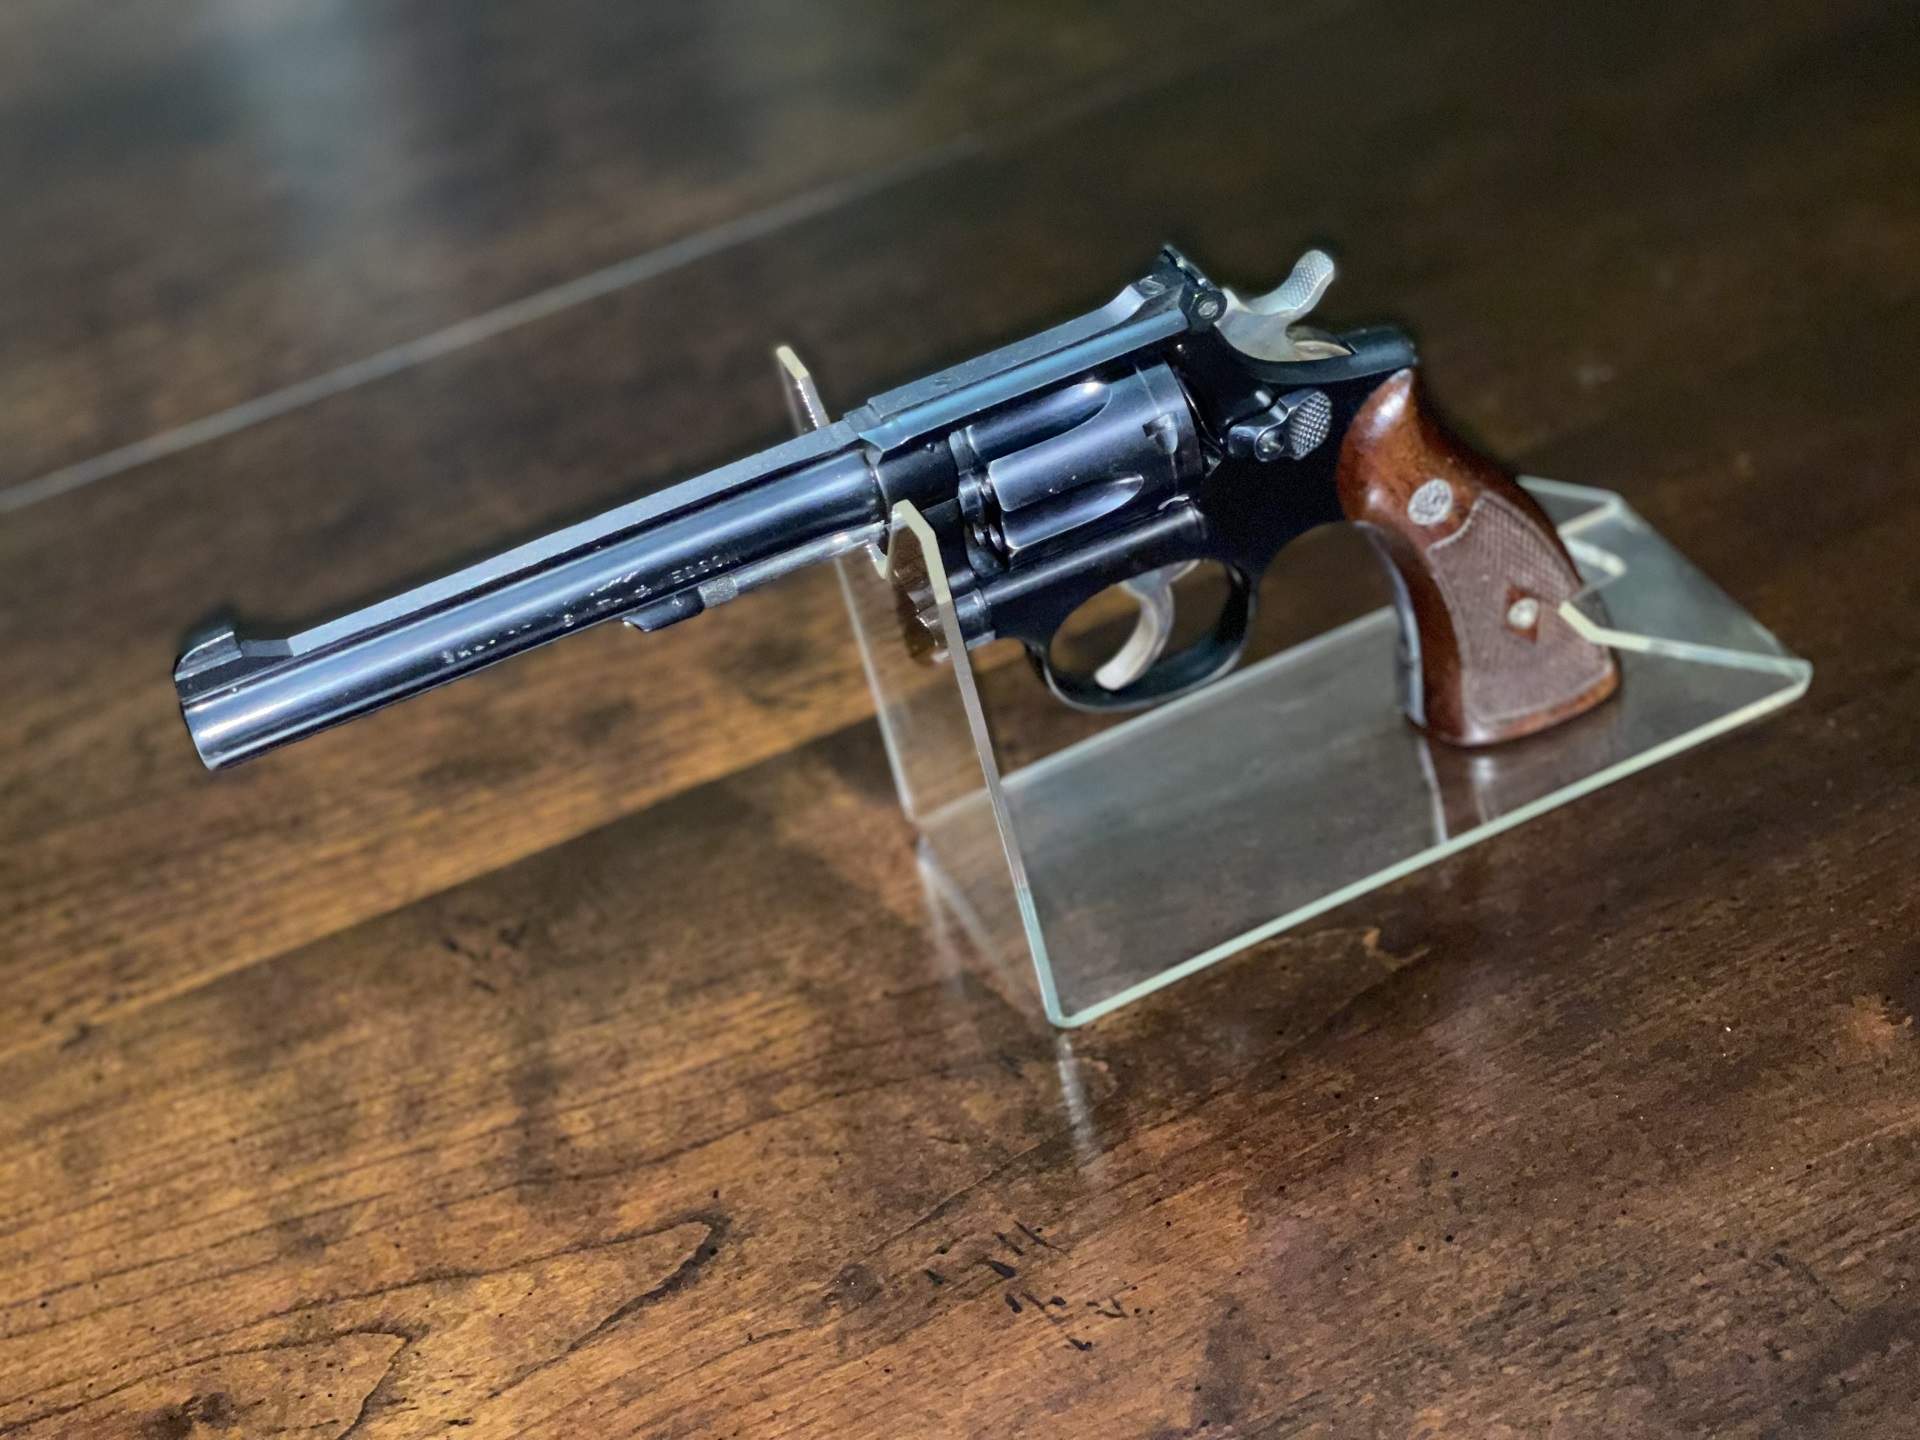 1953 Smith & Wesson K-22 Masterpiece 5-Screw